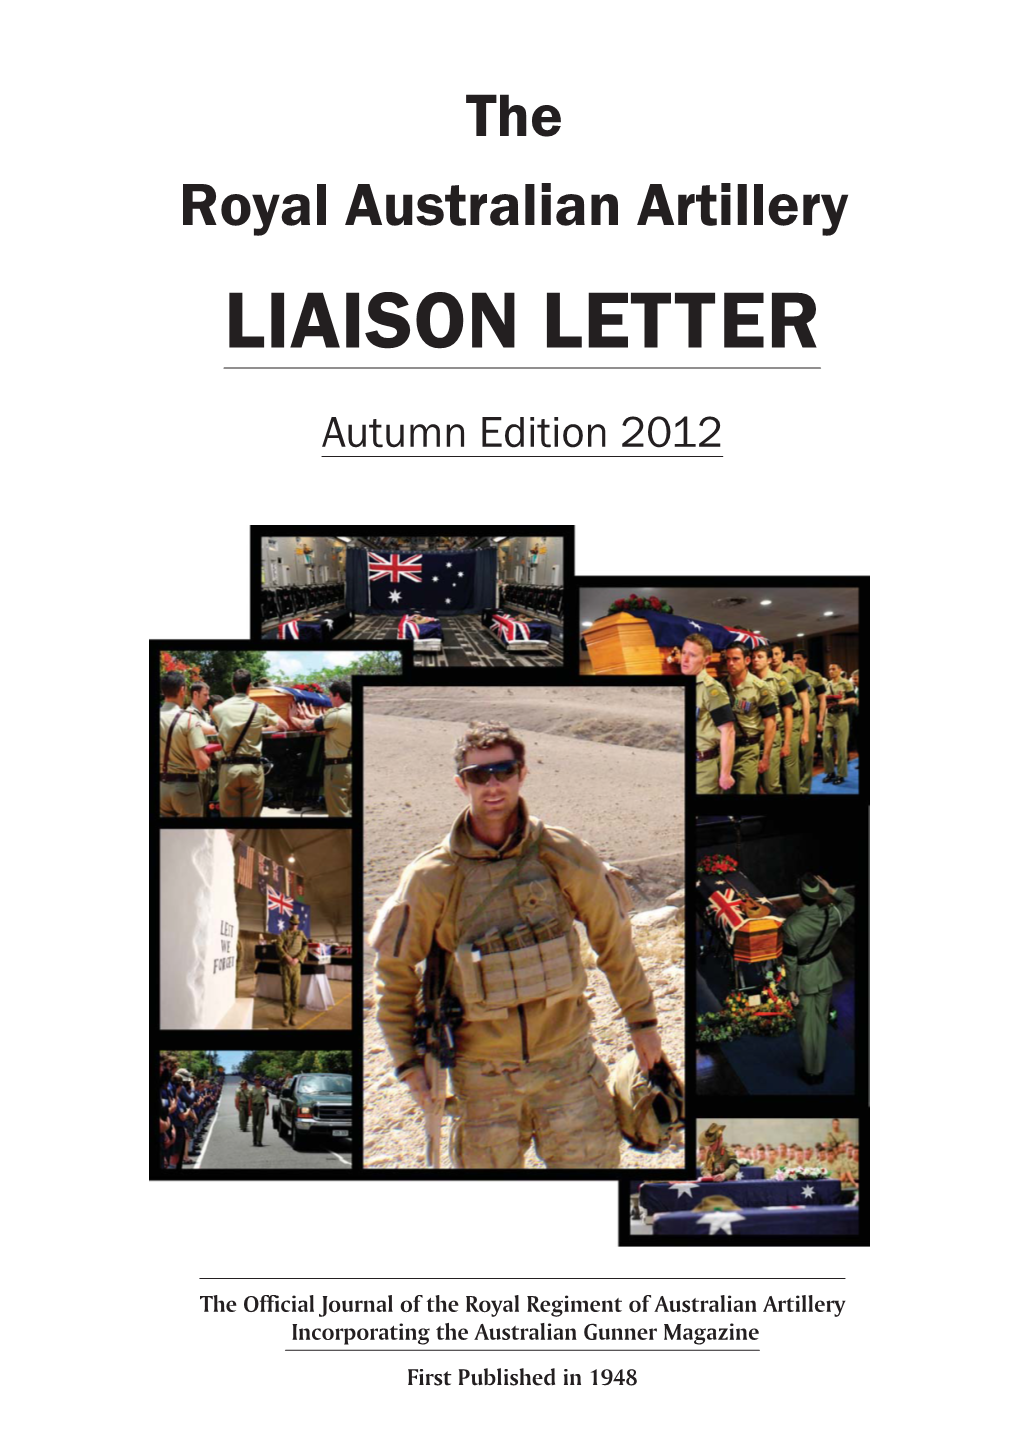 RAA Liaison Letter Autumn 2012